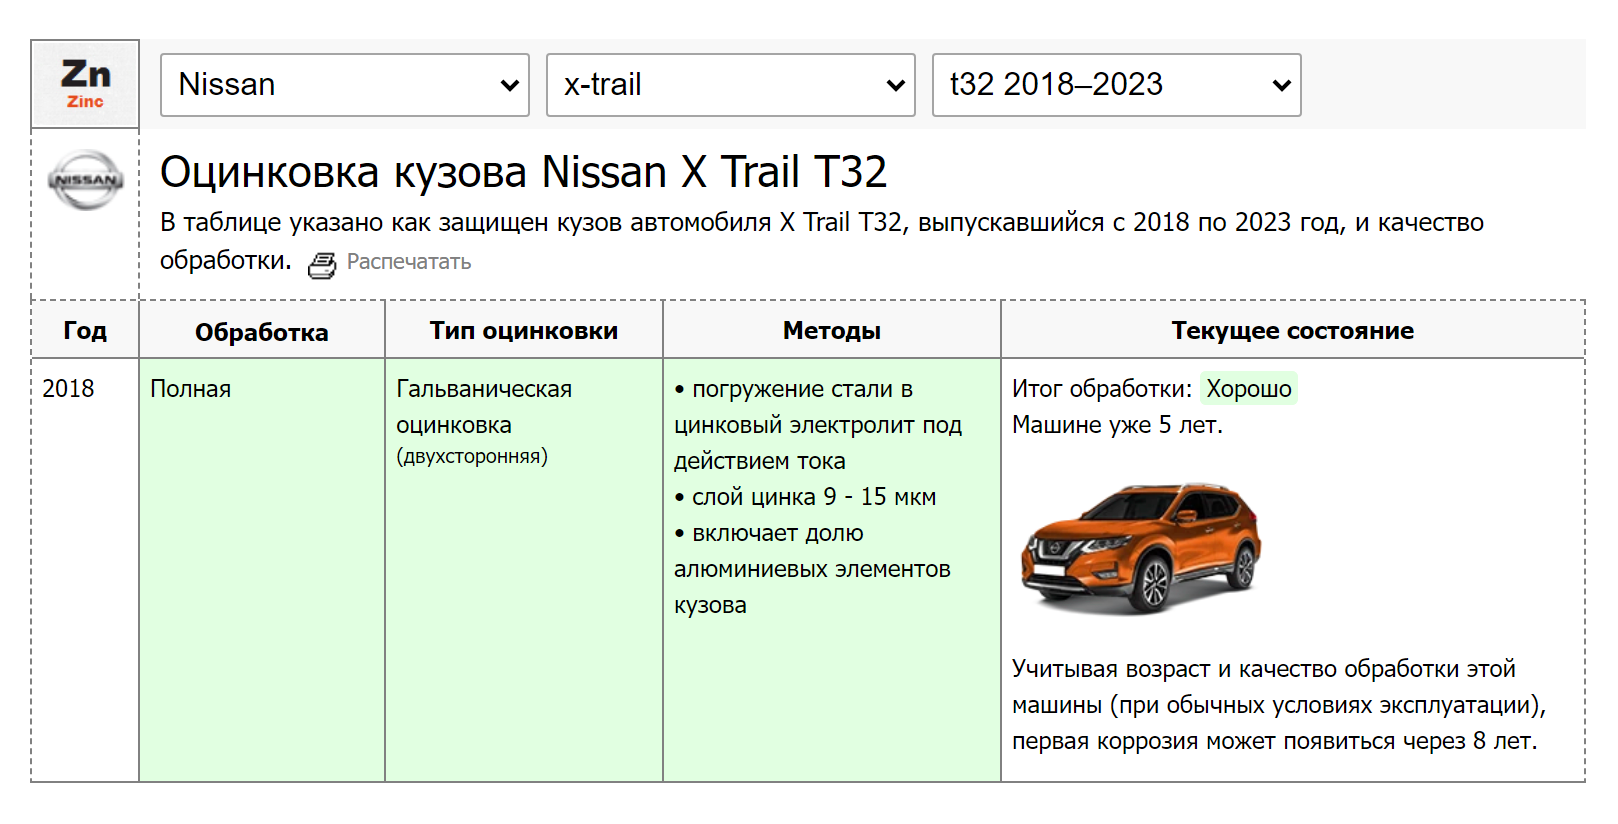 Для сравнения: антикоррозийной защиты кузова конкурента Nissan X⁠-⁠Trail хватит на те же 13 лет, но кузов обработали полностью